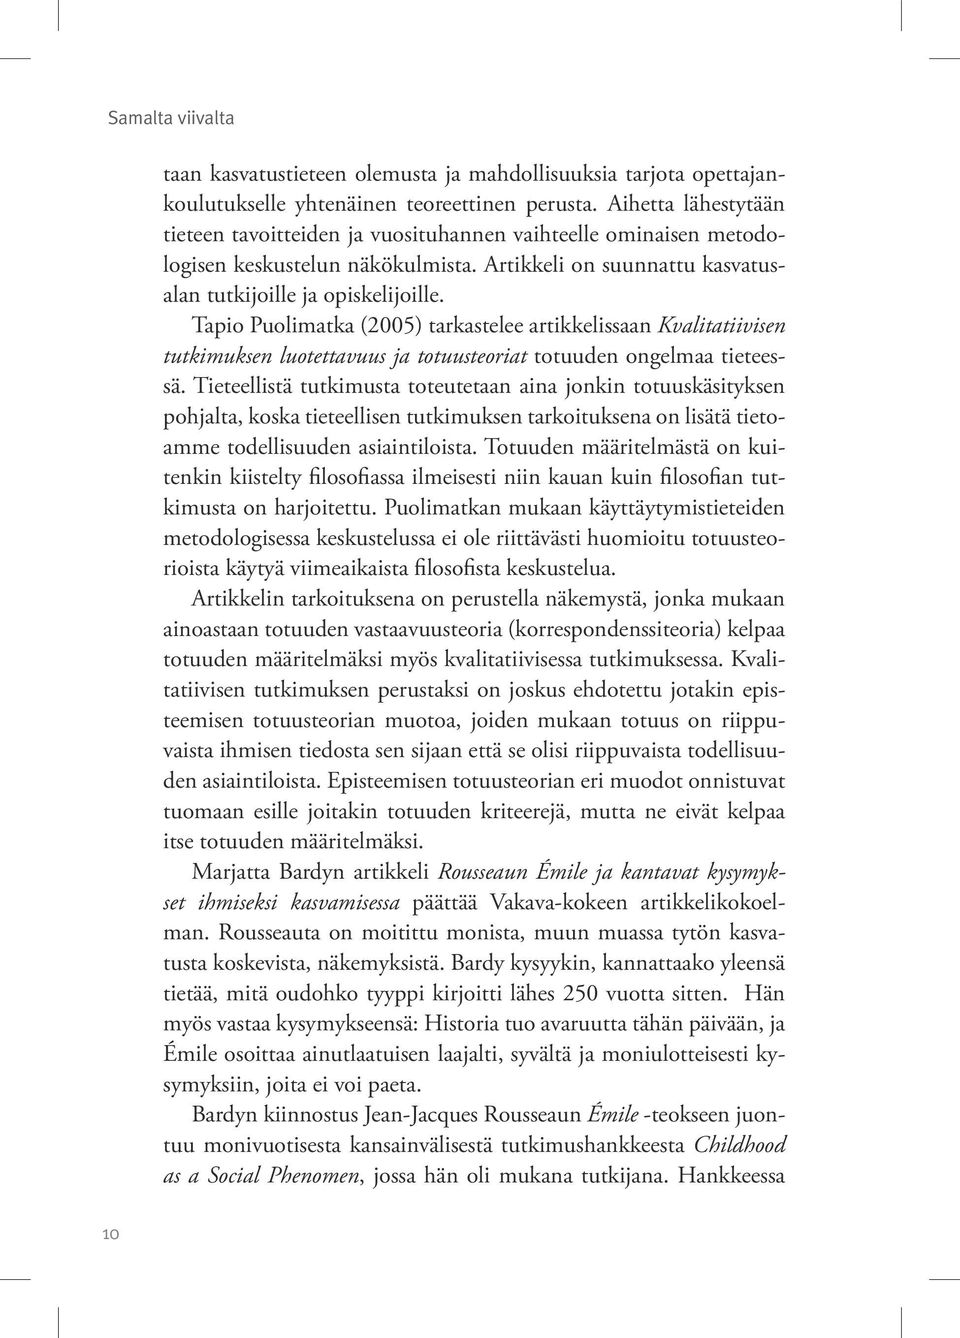 Tapio Puolimatka (2005) tarkastelee artikkelissaan Kvalitatiivisen tutkimuksen luotettavuus ja totuusteoriat totuuden ongelmaa tieteessä.